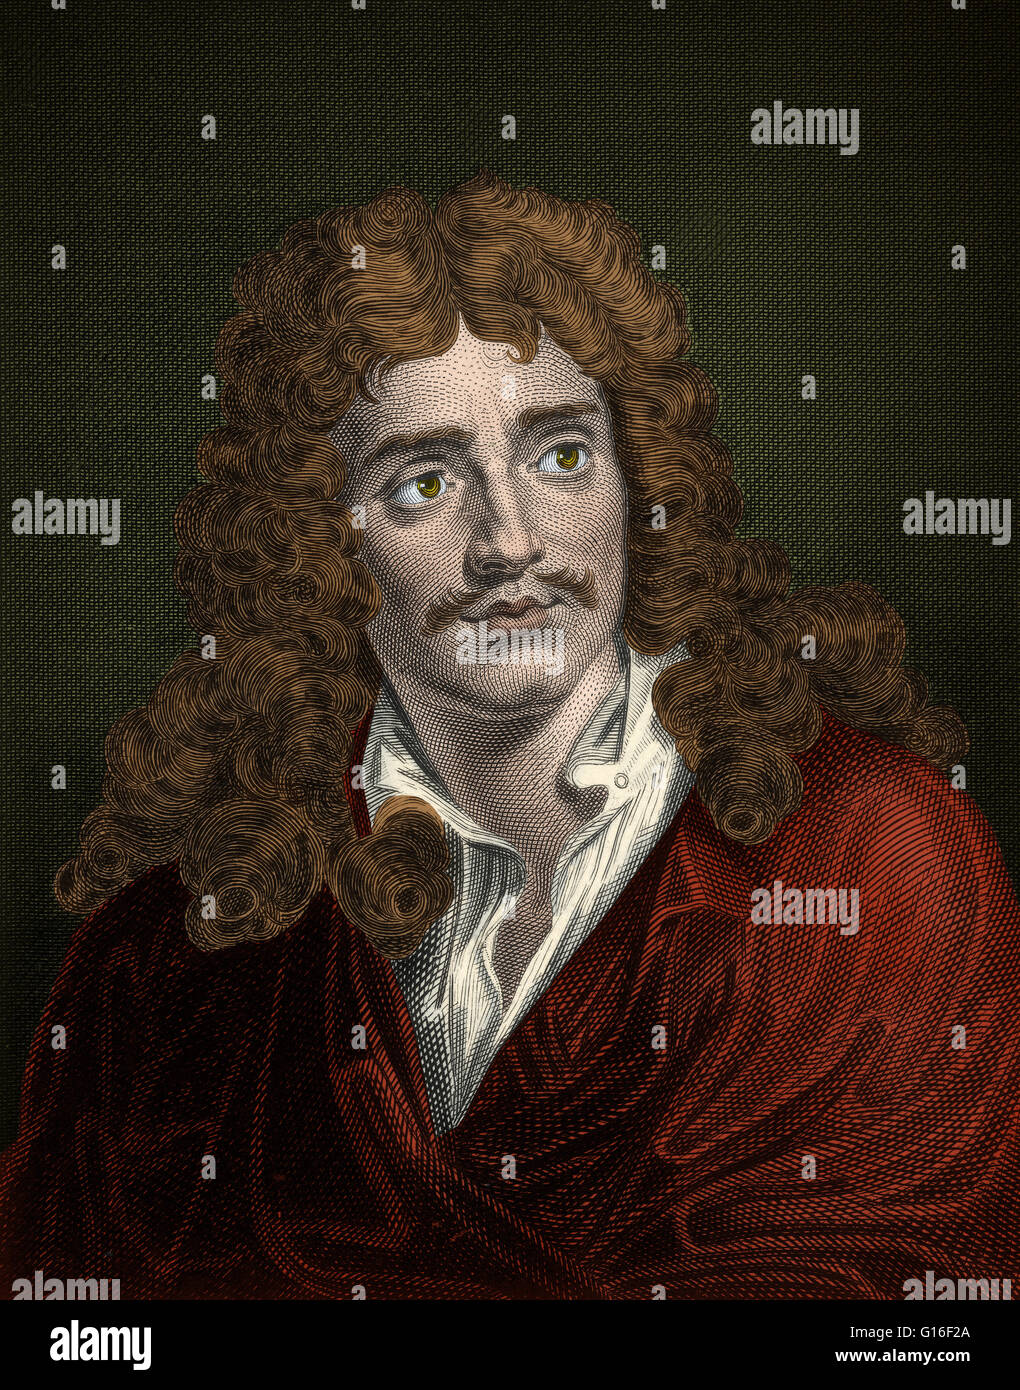 Jean-Baptiste Poquelin, bekannt unter seinem Künstlernamen Moliere (Januar Februar 15,1622 - 17,1673) war ein französischer Dramatiker und Schauspieler, der als einer der größten Meister der Komödie in der westlichen Literatur gilt. Dieses Bild wurde Farbe verbessert. Stockfoto